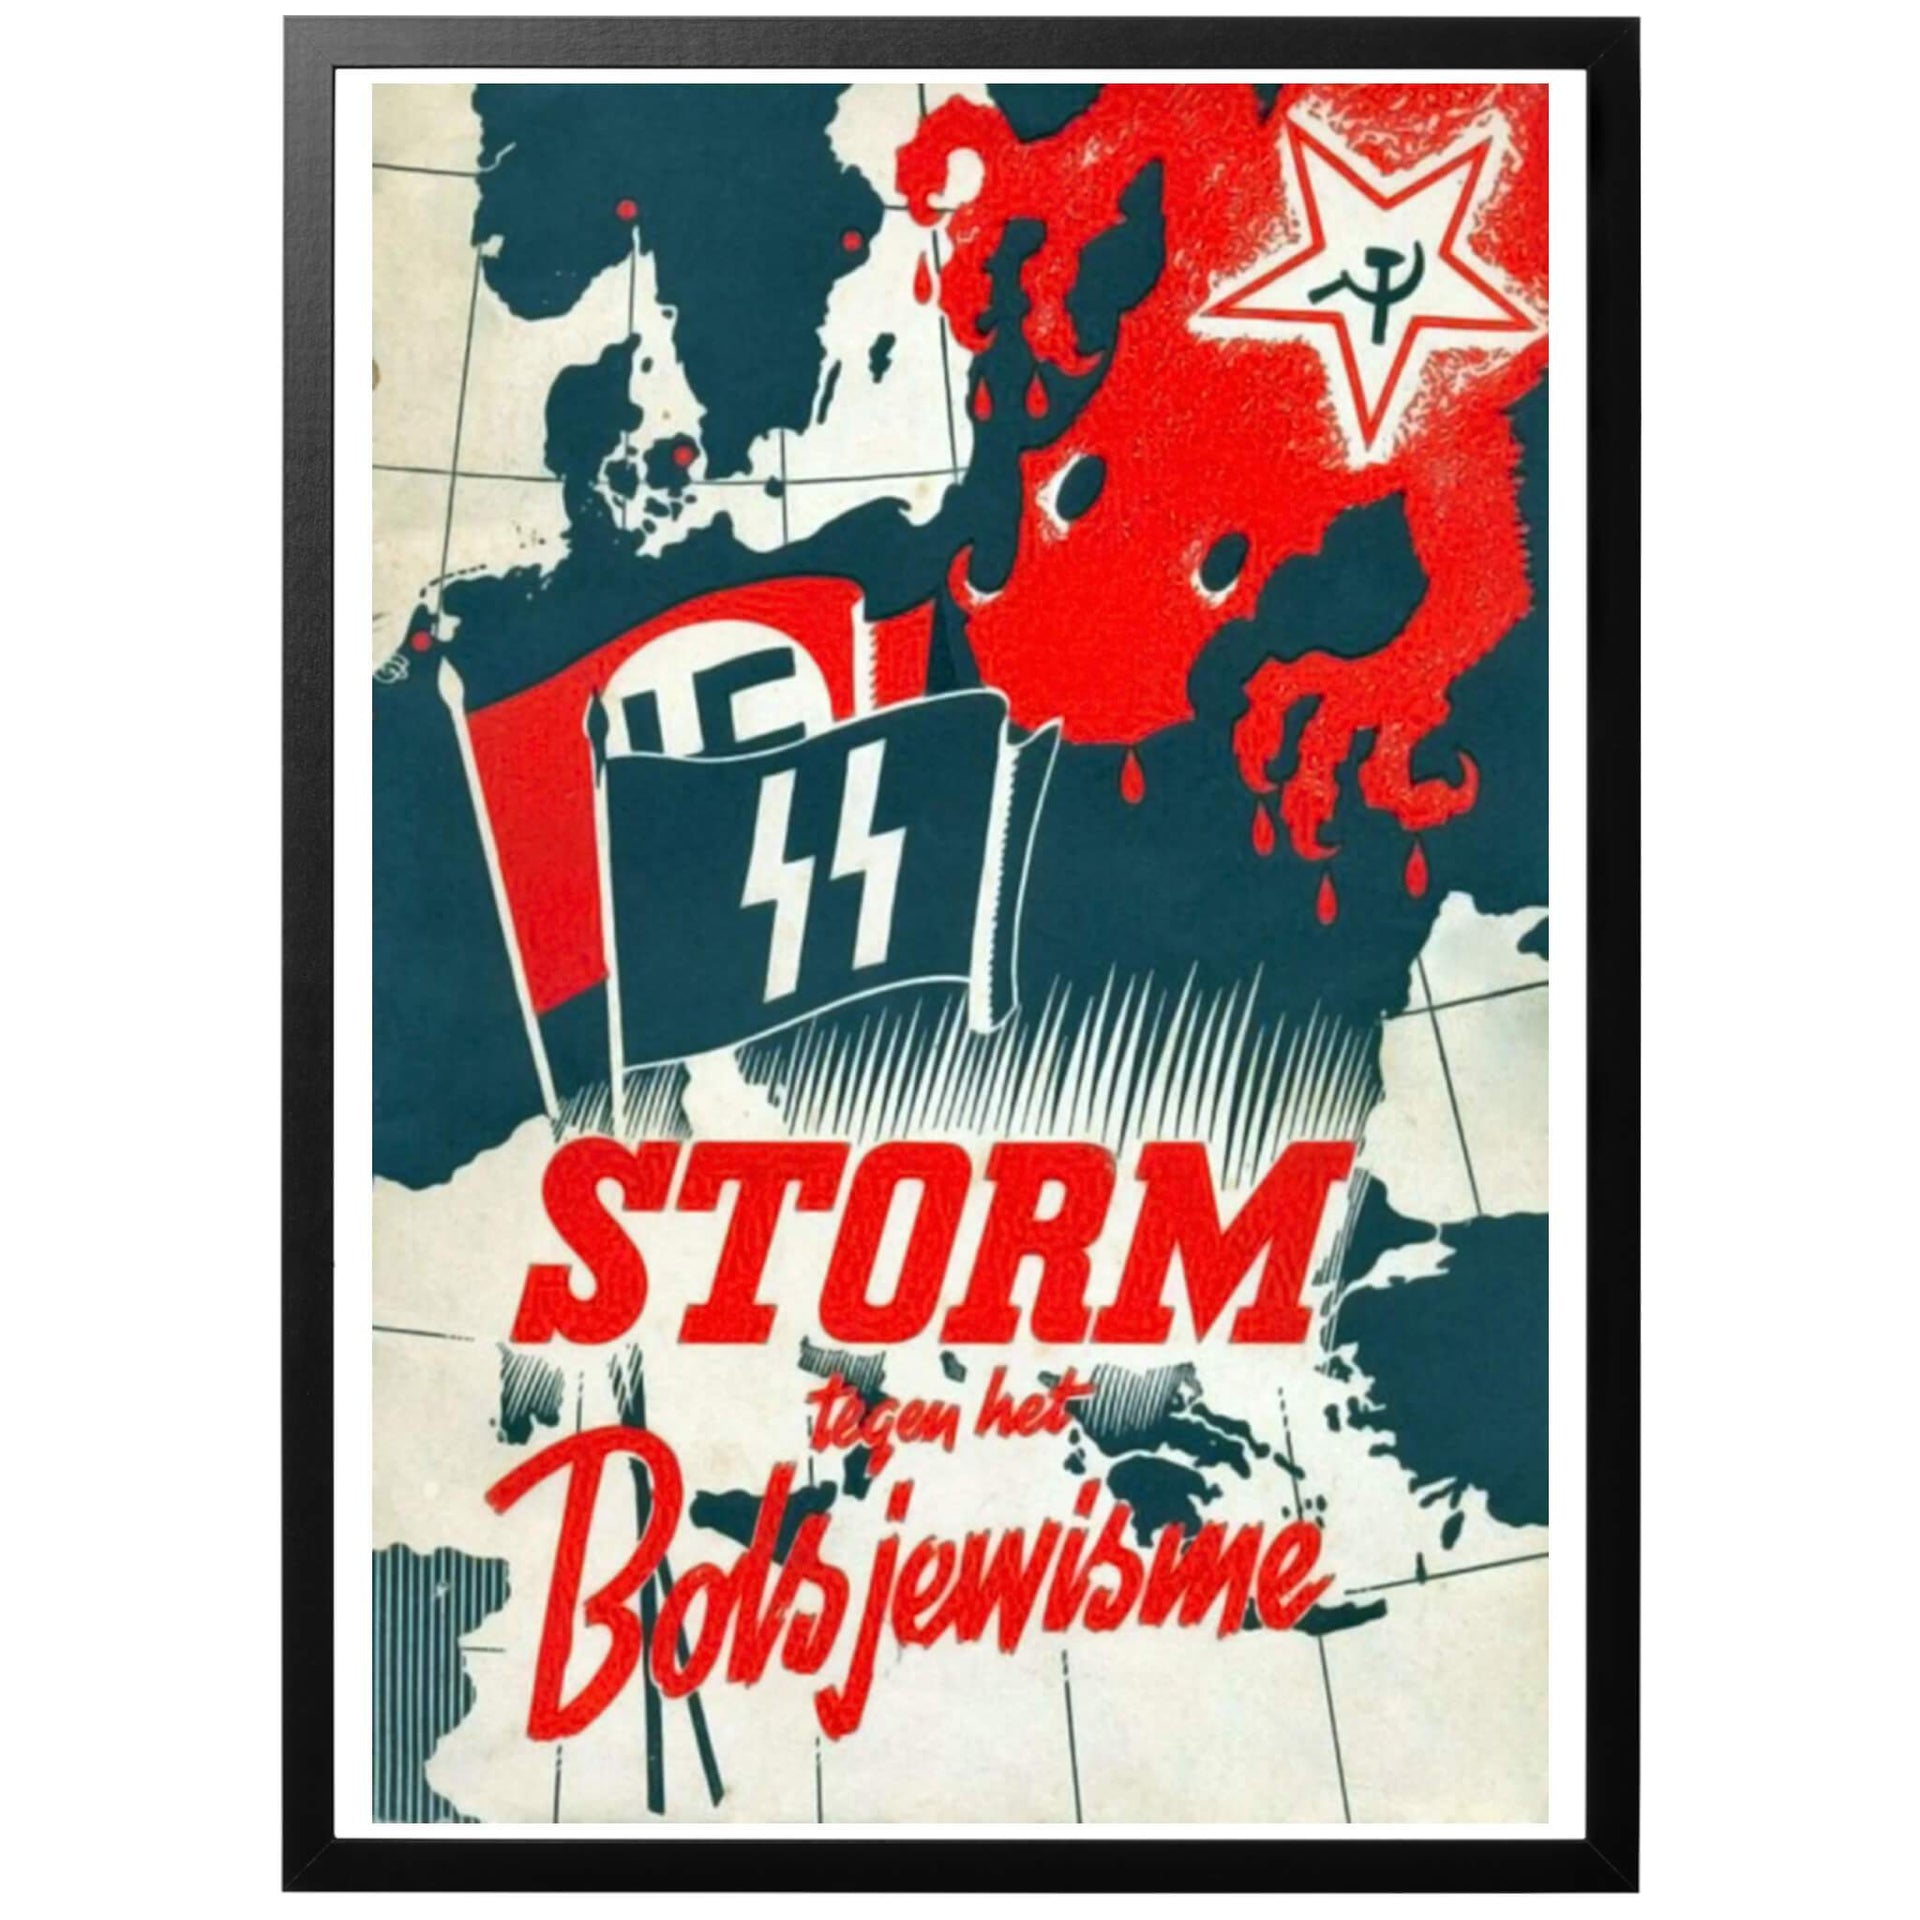 Storm tegen het Bolsjewisme - "Storm mot bolsjevismen" Nederländsk WWII affisch Årtal: 1943 Konstnär: Okänd Affischens historia Nederländsk propagandaposter utgivet av den nazistiska propagandatidningen "Storm SS". Köp till inramning - läs mer om våra ramar!